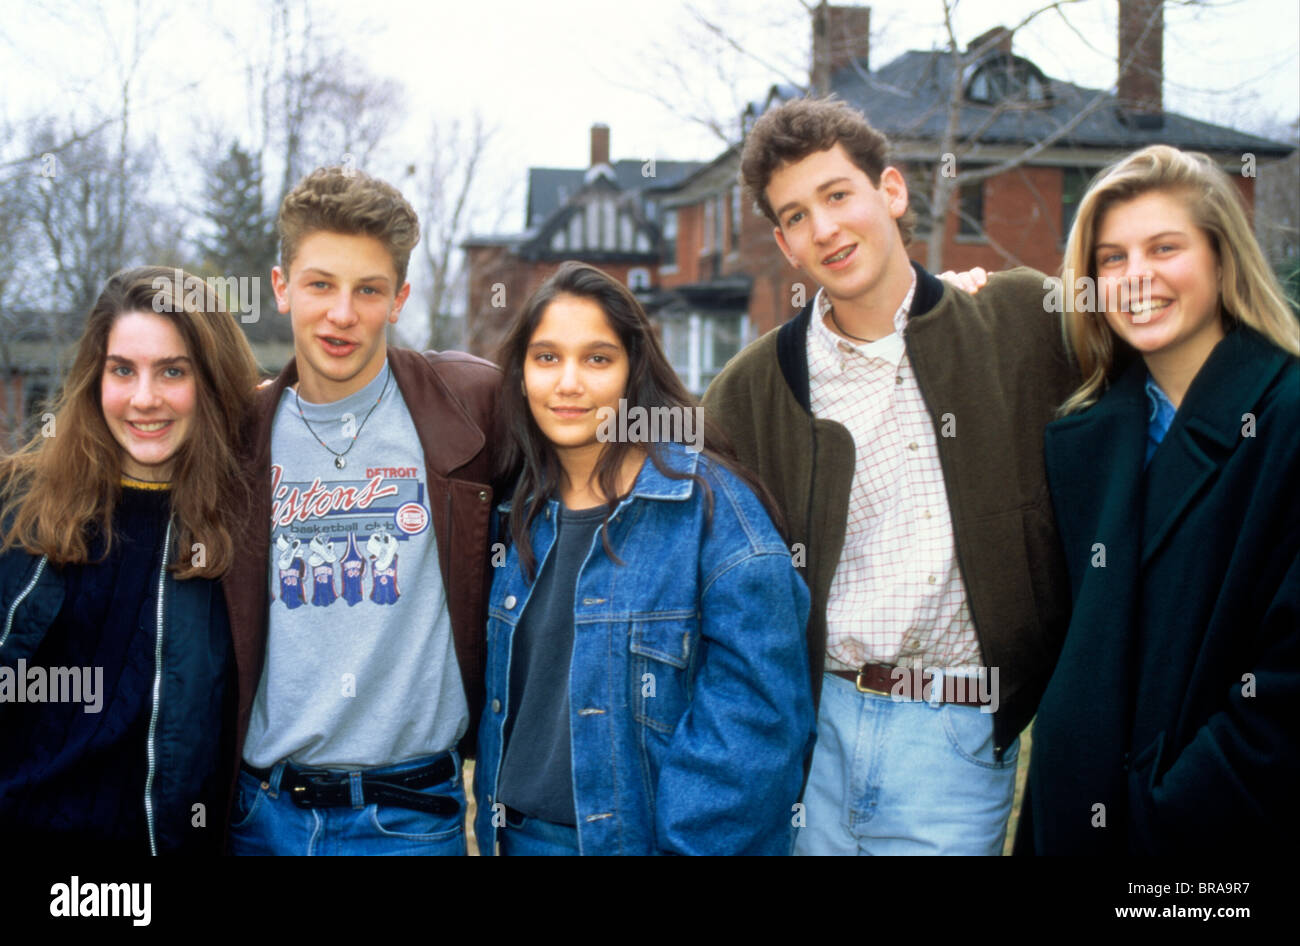 1990 PORTRAIT DE GROUPE DE DEUX ADOLESCENTS ET TROIS TEENAGE GIRLS LOOKING AT CAMERA Banque D'Images